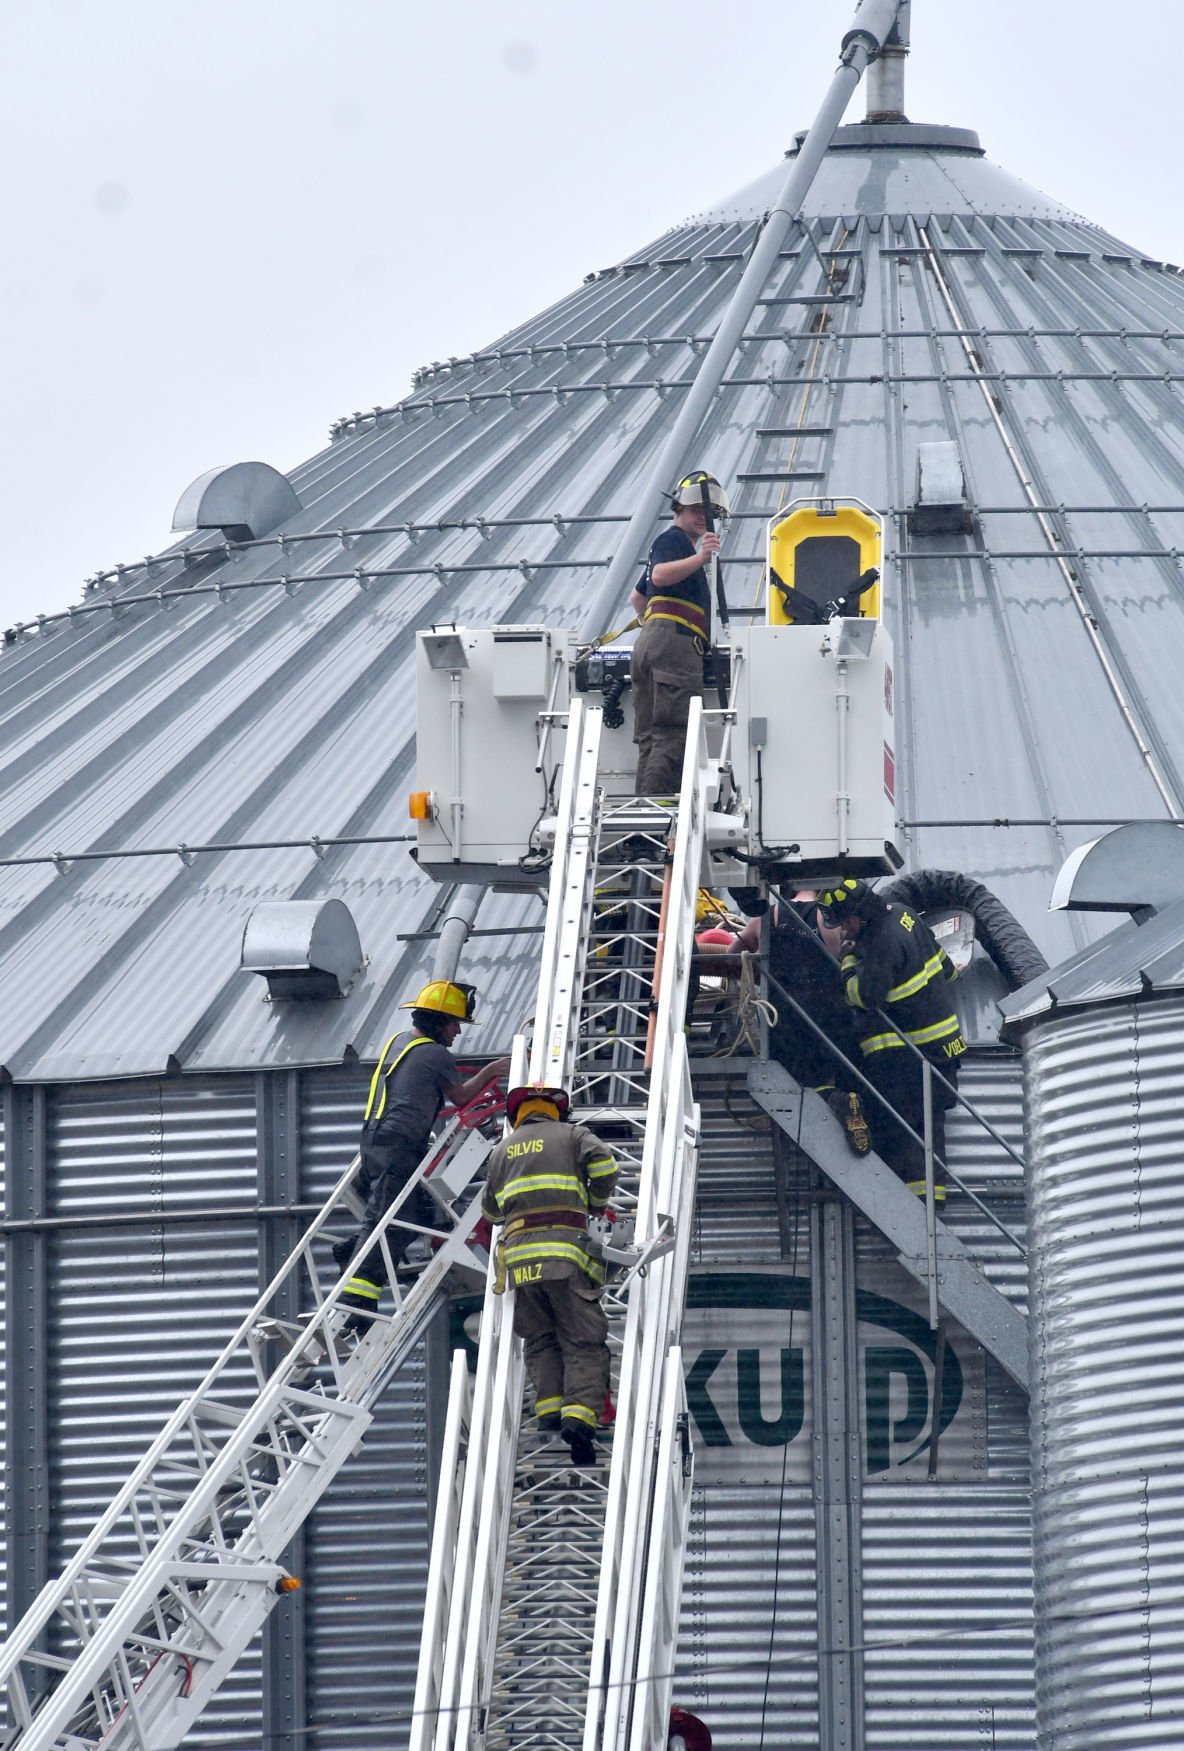 ocillating corn silo rescue equipment